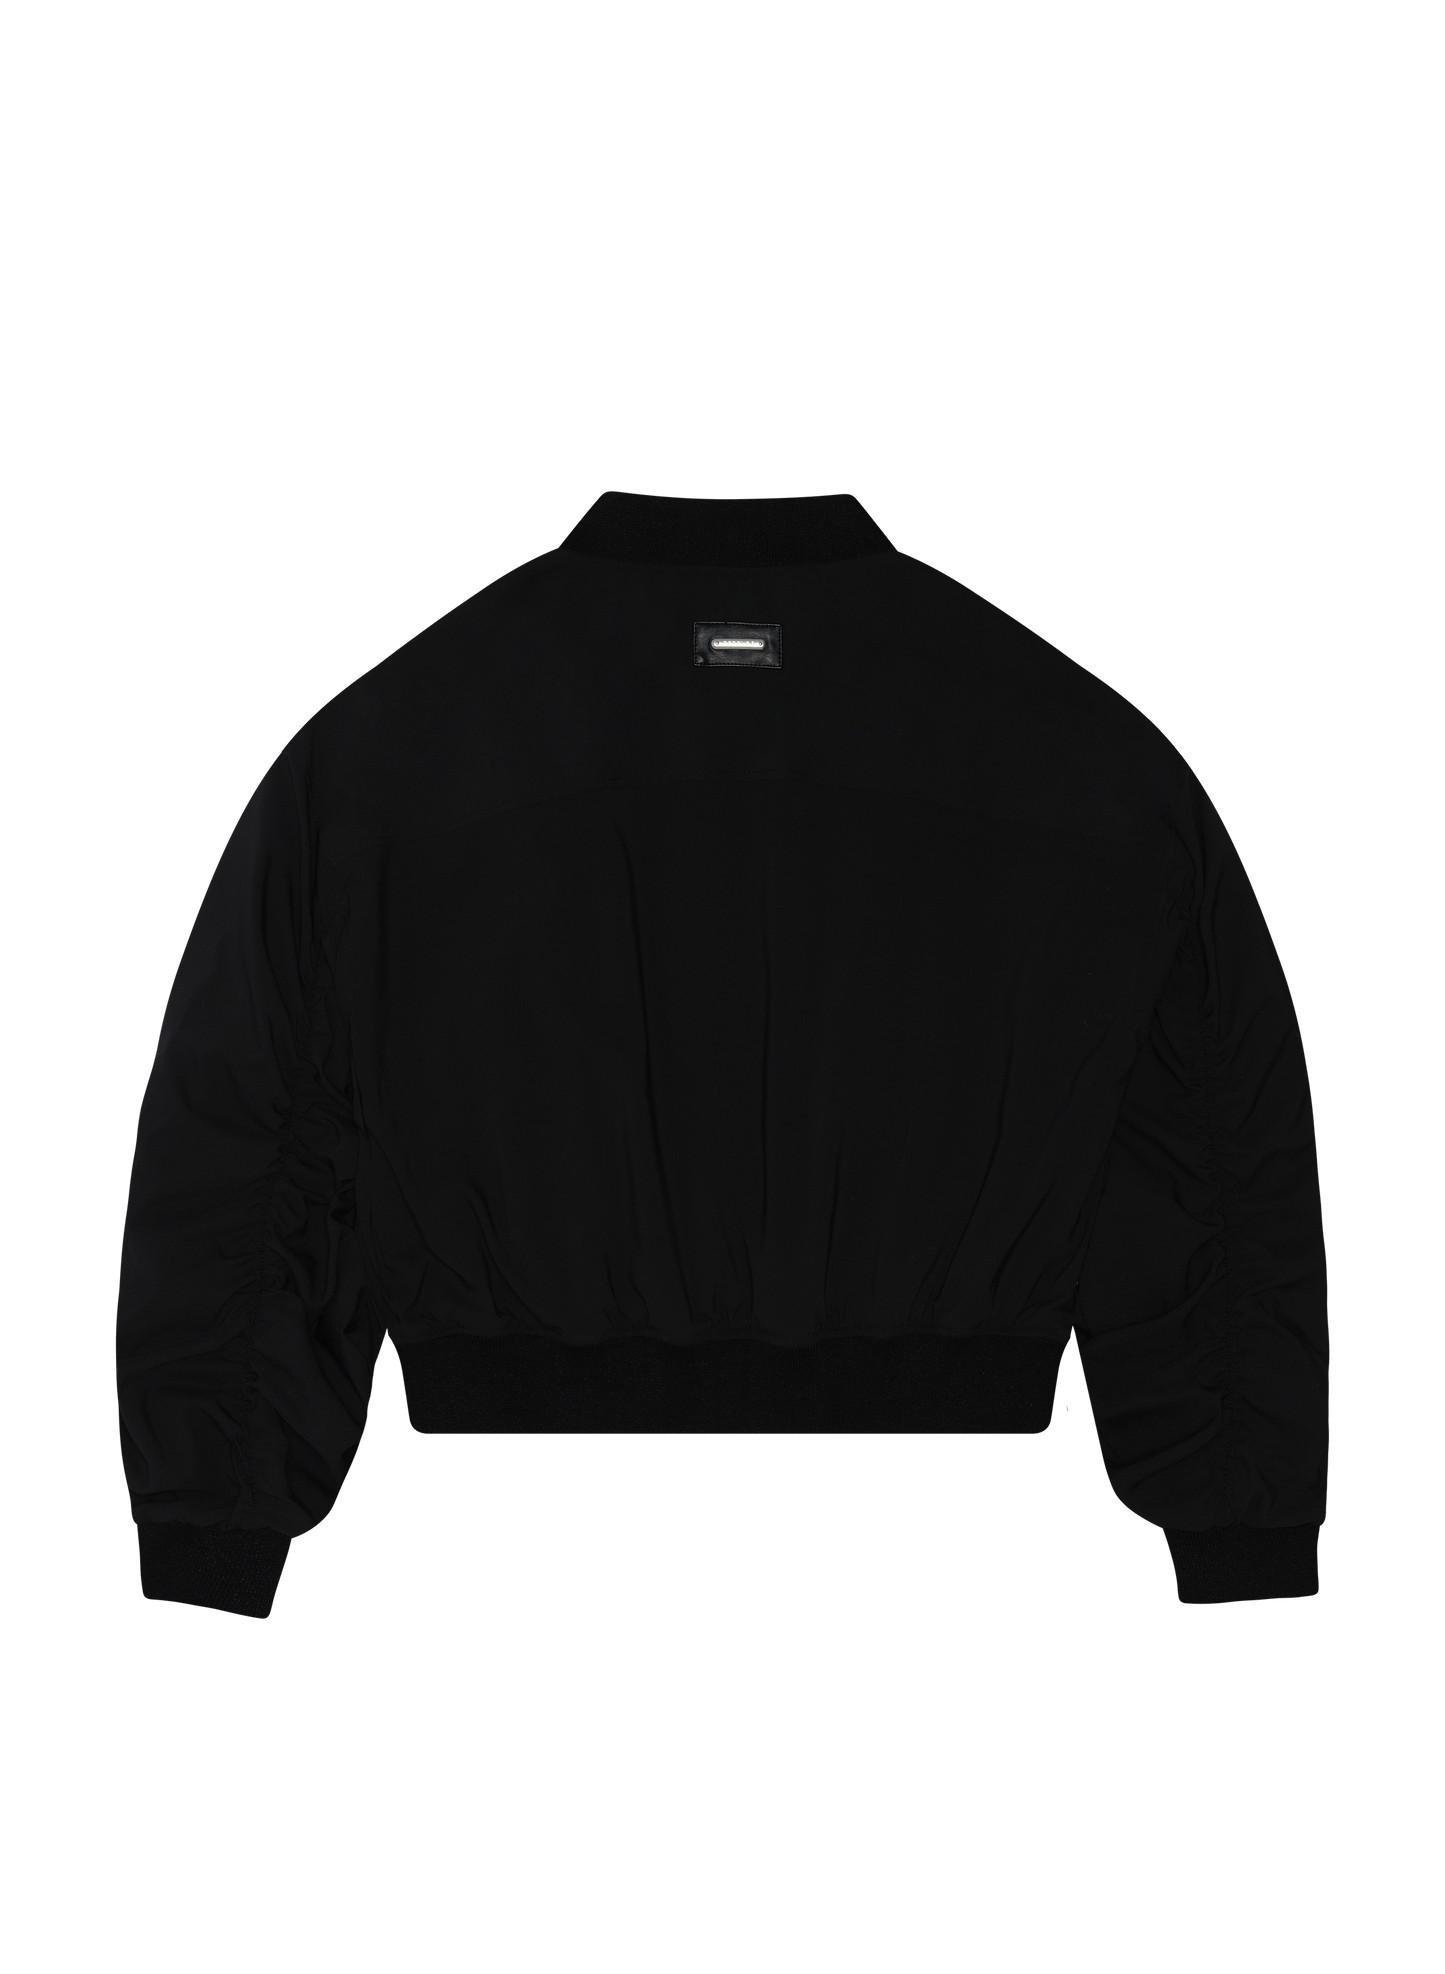 bomber jacket - black